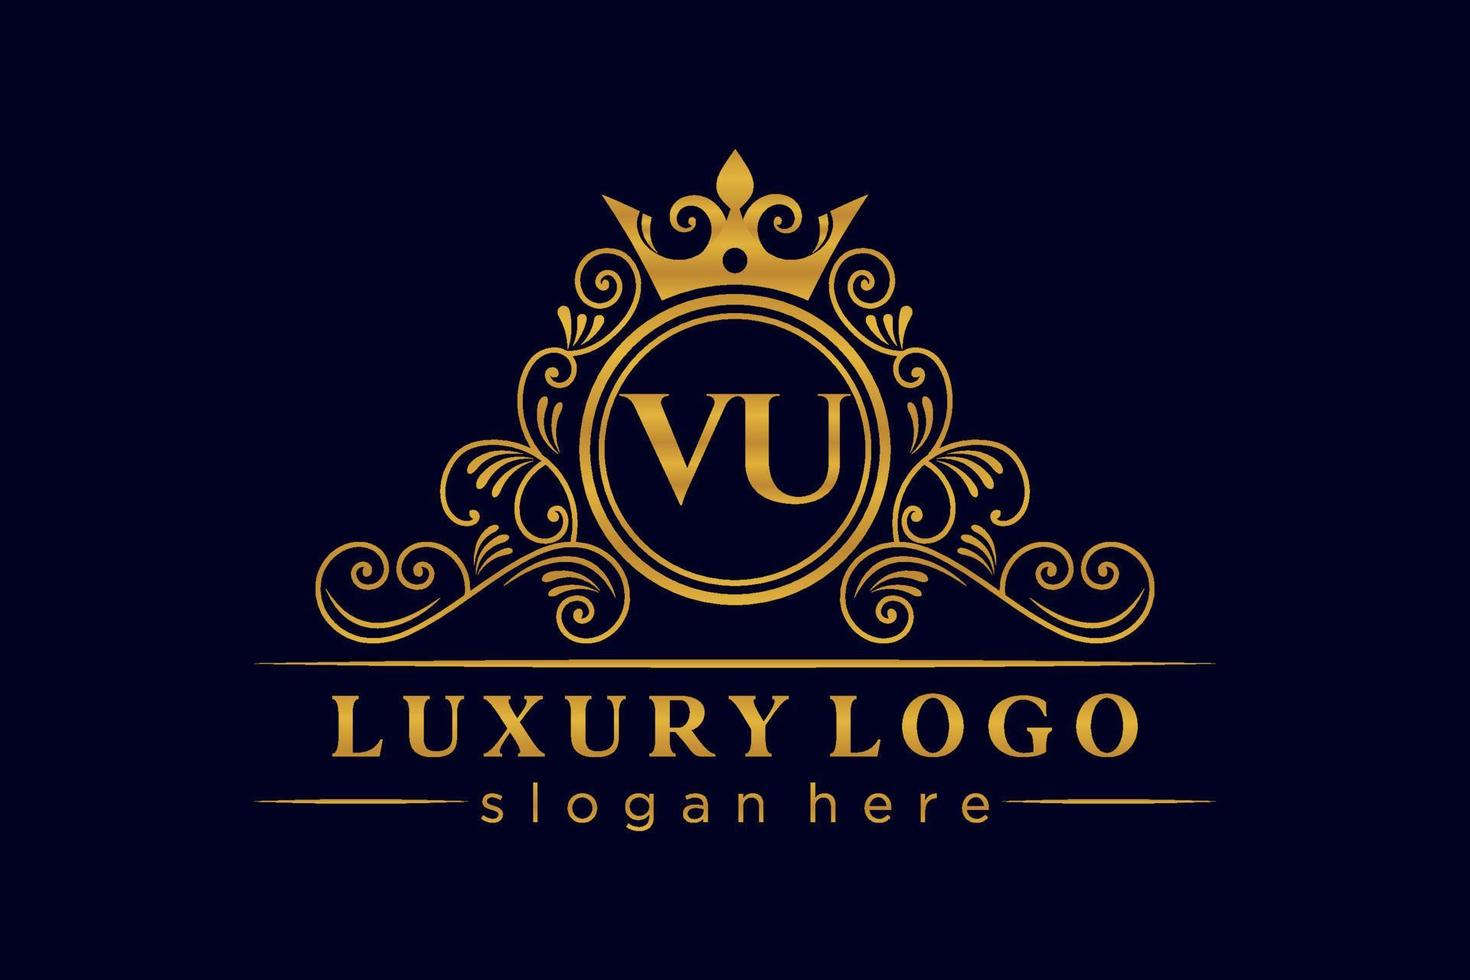 vu letra inicial ouro caligráfico feminino floral mão desenhada monograma heráldico antigo estilo vintage luxo design de logotipo vetor premium